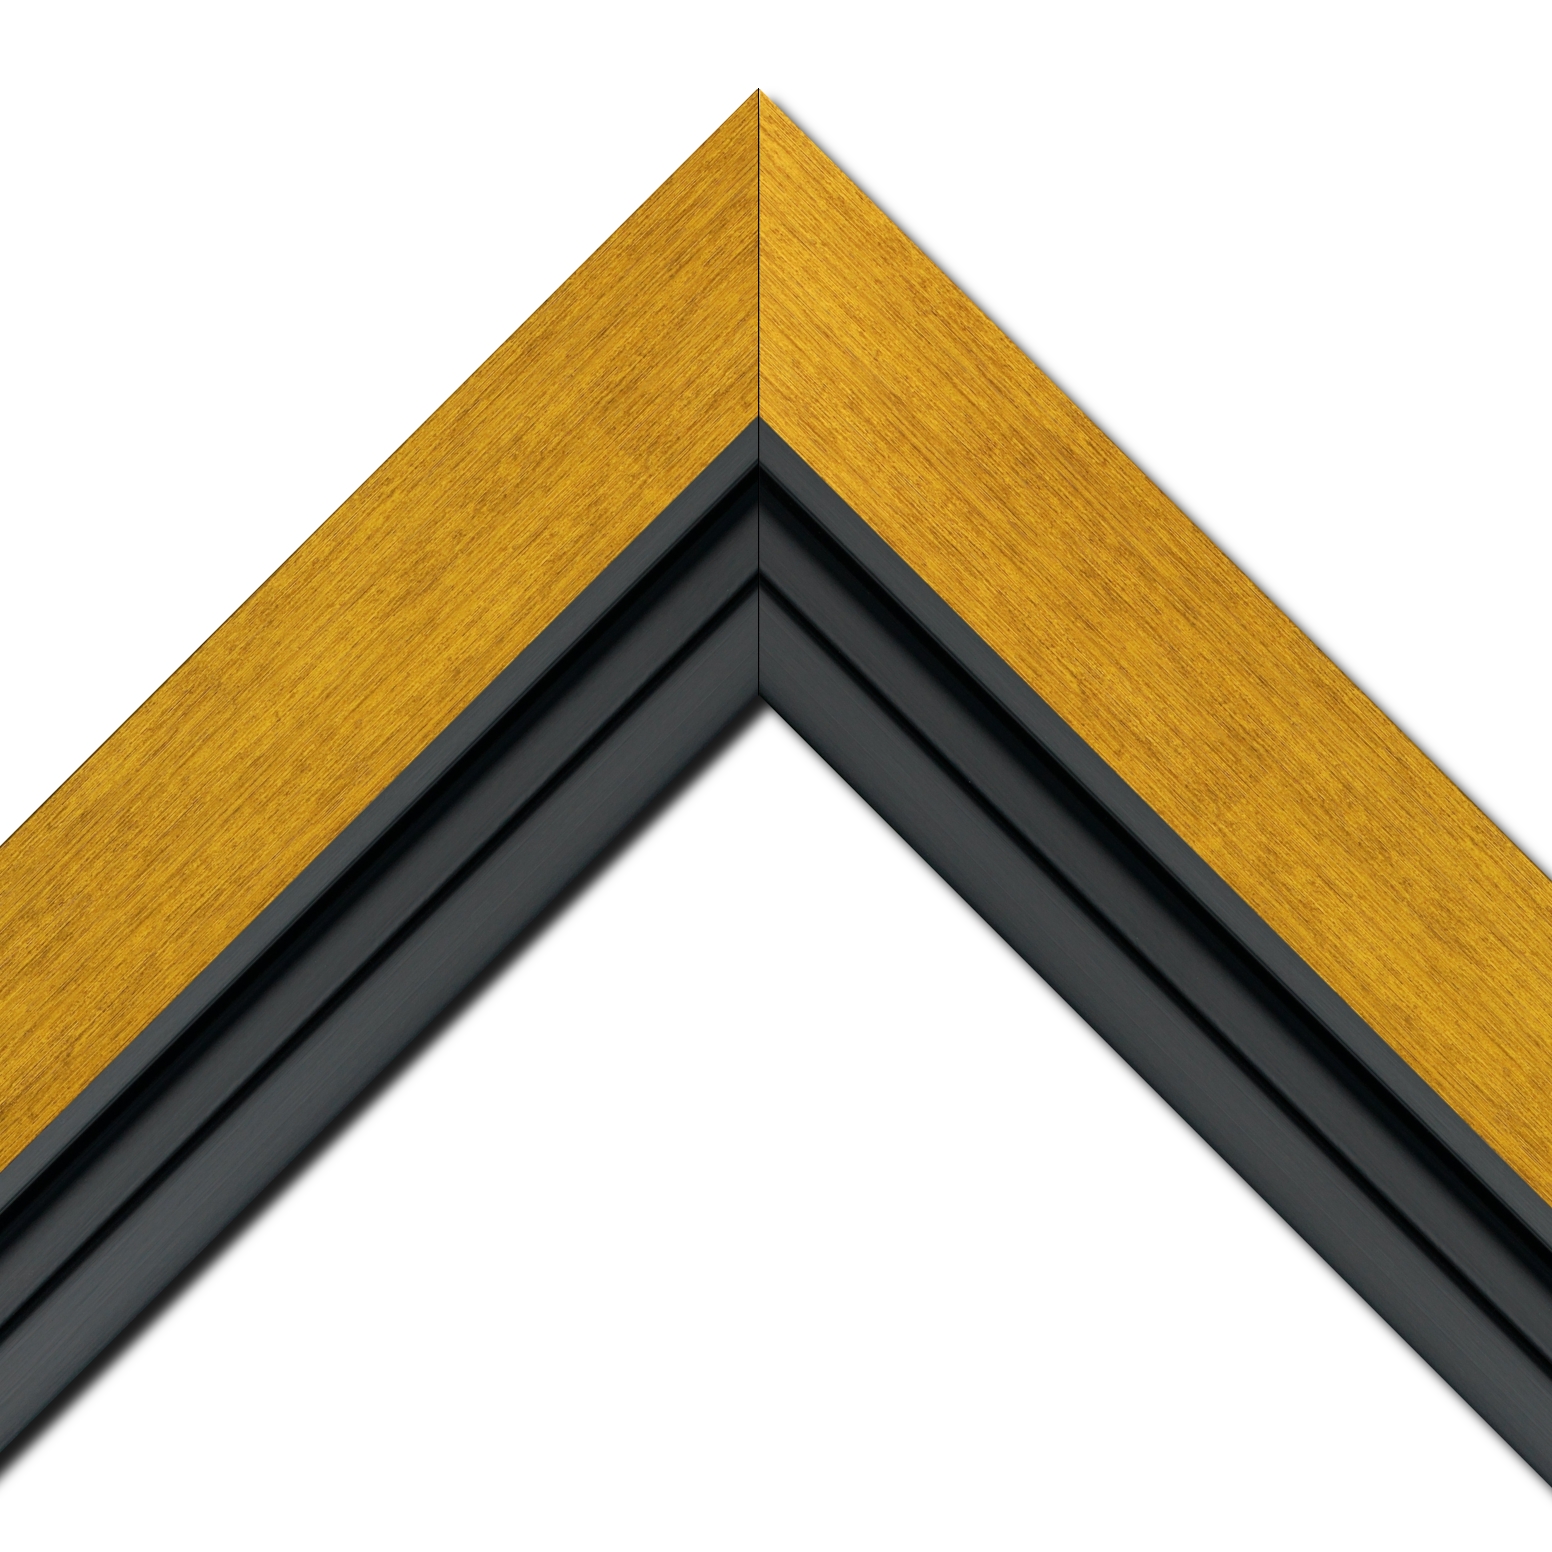 Baguette bois profil plat largeur 6cm couleur or contemporain satiné haut de gamme + bois caisse américaine profil escalier largeur 4.5cm noir mat (spécialement conçu pour les châssis d'une épaisseur jusqu’à 2.5cm )largeur totale du cadre 9.6cm